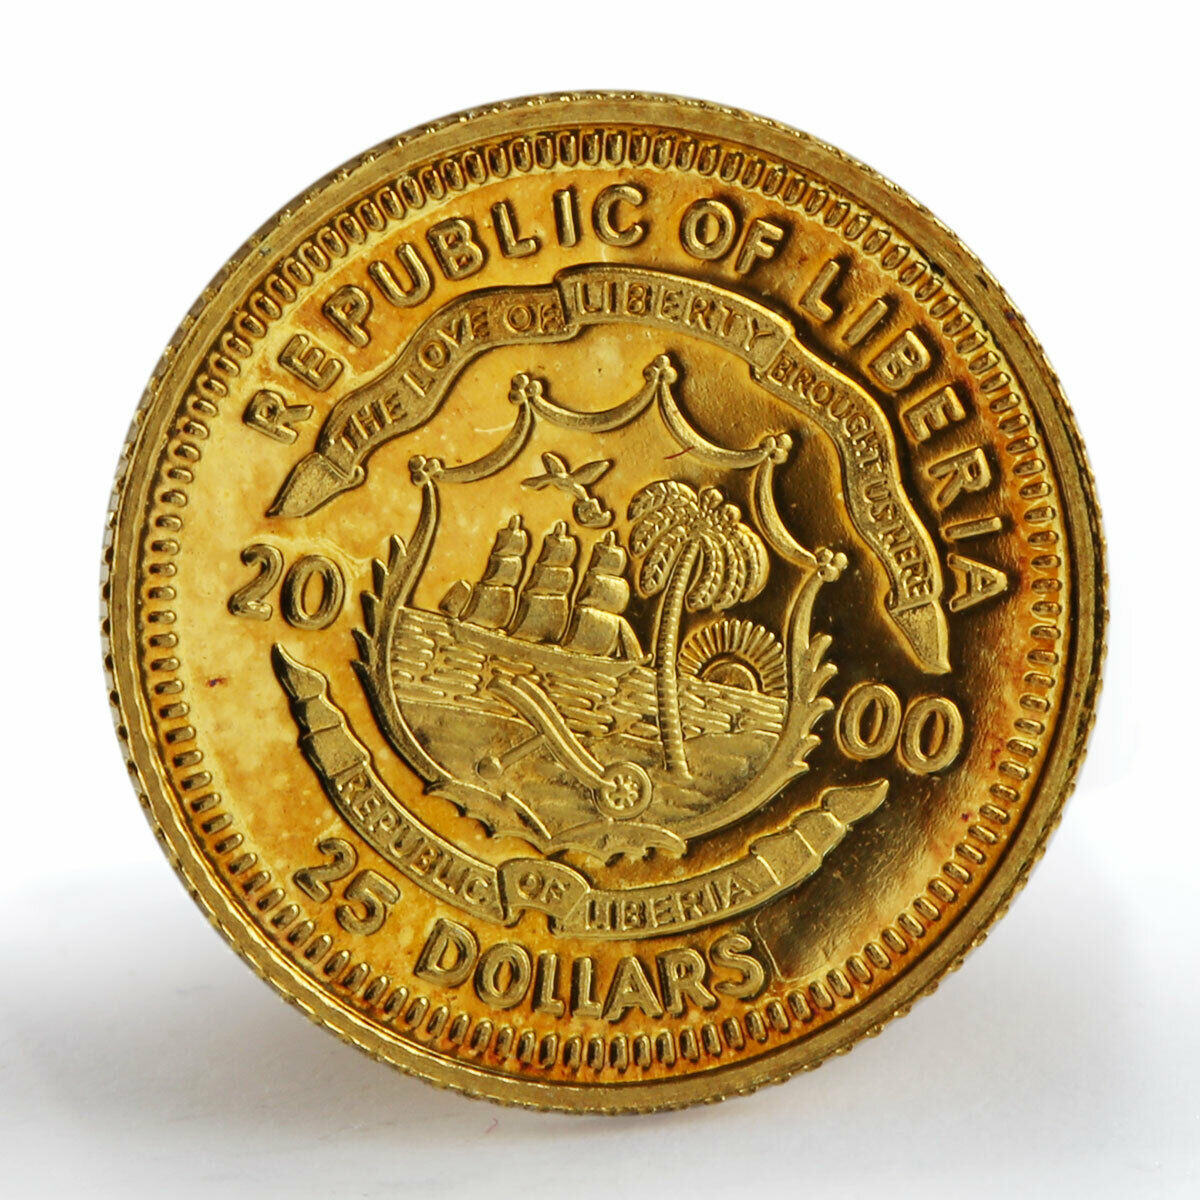 Liberia 25 dollars John F. Kennedy 1917-1963 gold coin 2000